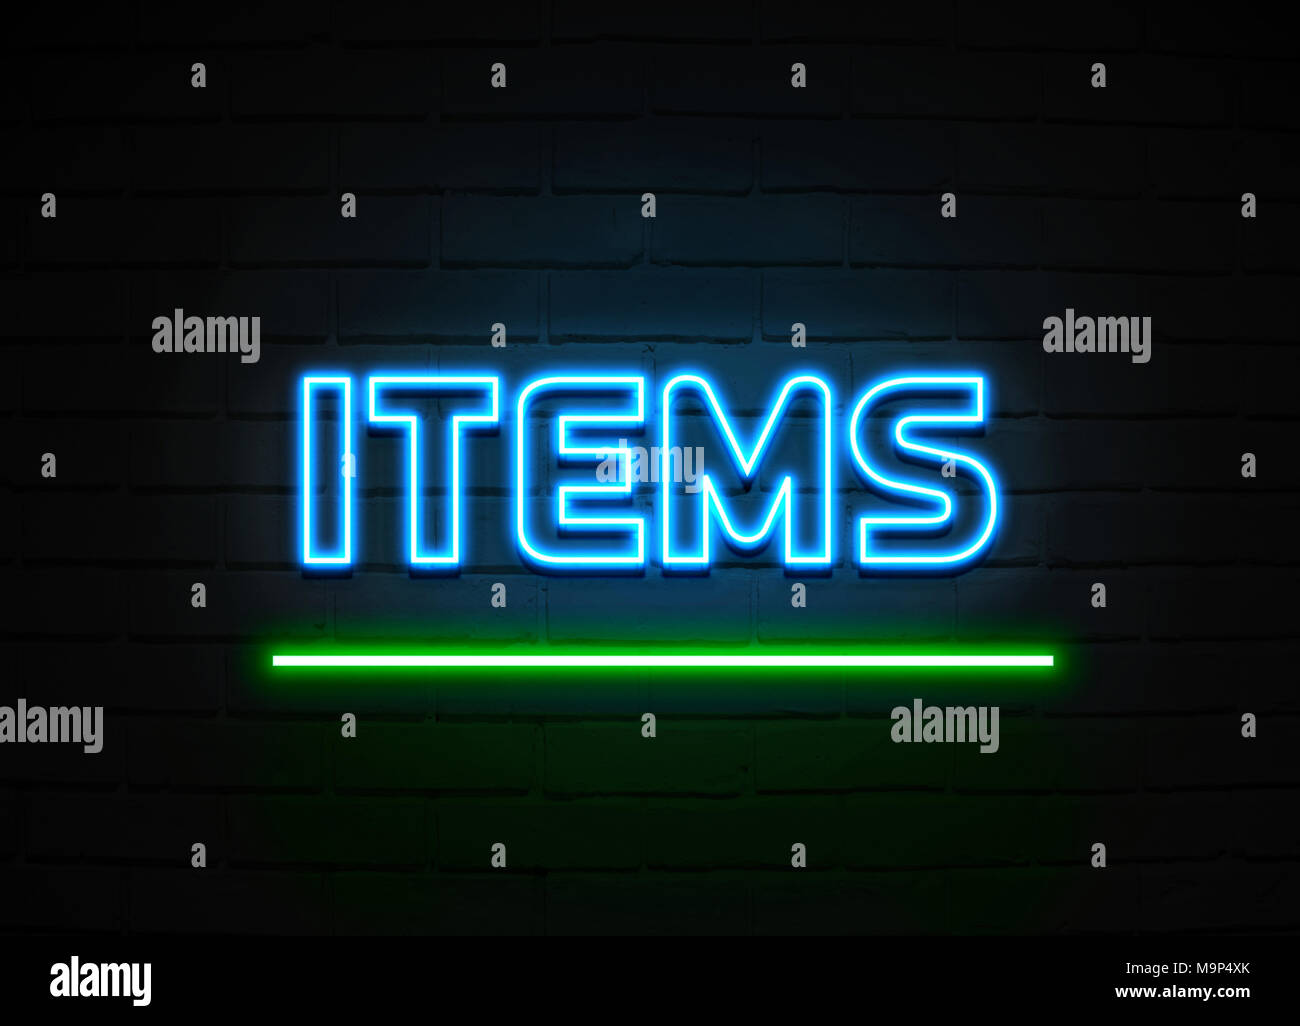 Produkte Neon Sign - glühende Leuchtreklame auf brickwall Wand - 3D-Royalty Free Stock Illustration dargestellt. Stockfoto